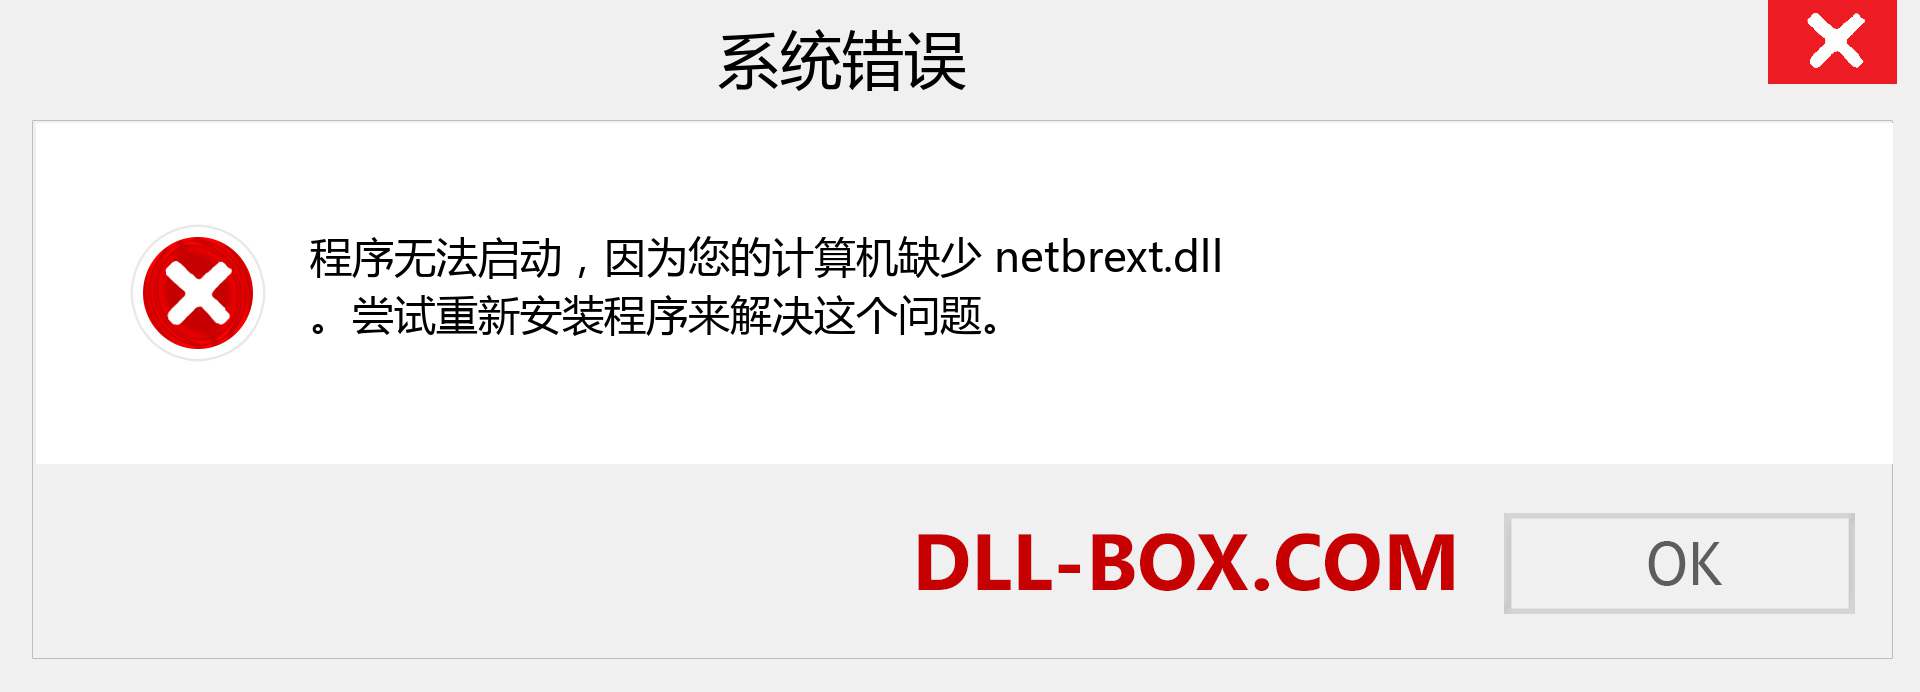 netbrext.dll 文件丢失？。 适用于 Windows 7、8、10 的下载 - 修复 Windows、照片、图像上的 netbrext dll 丢失错误